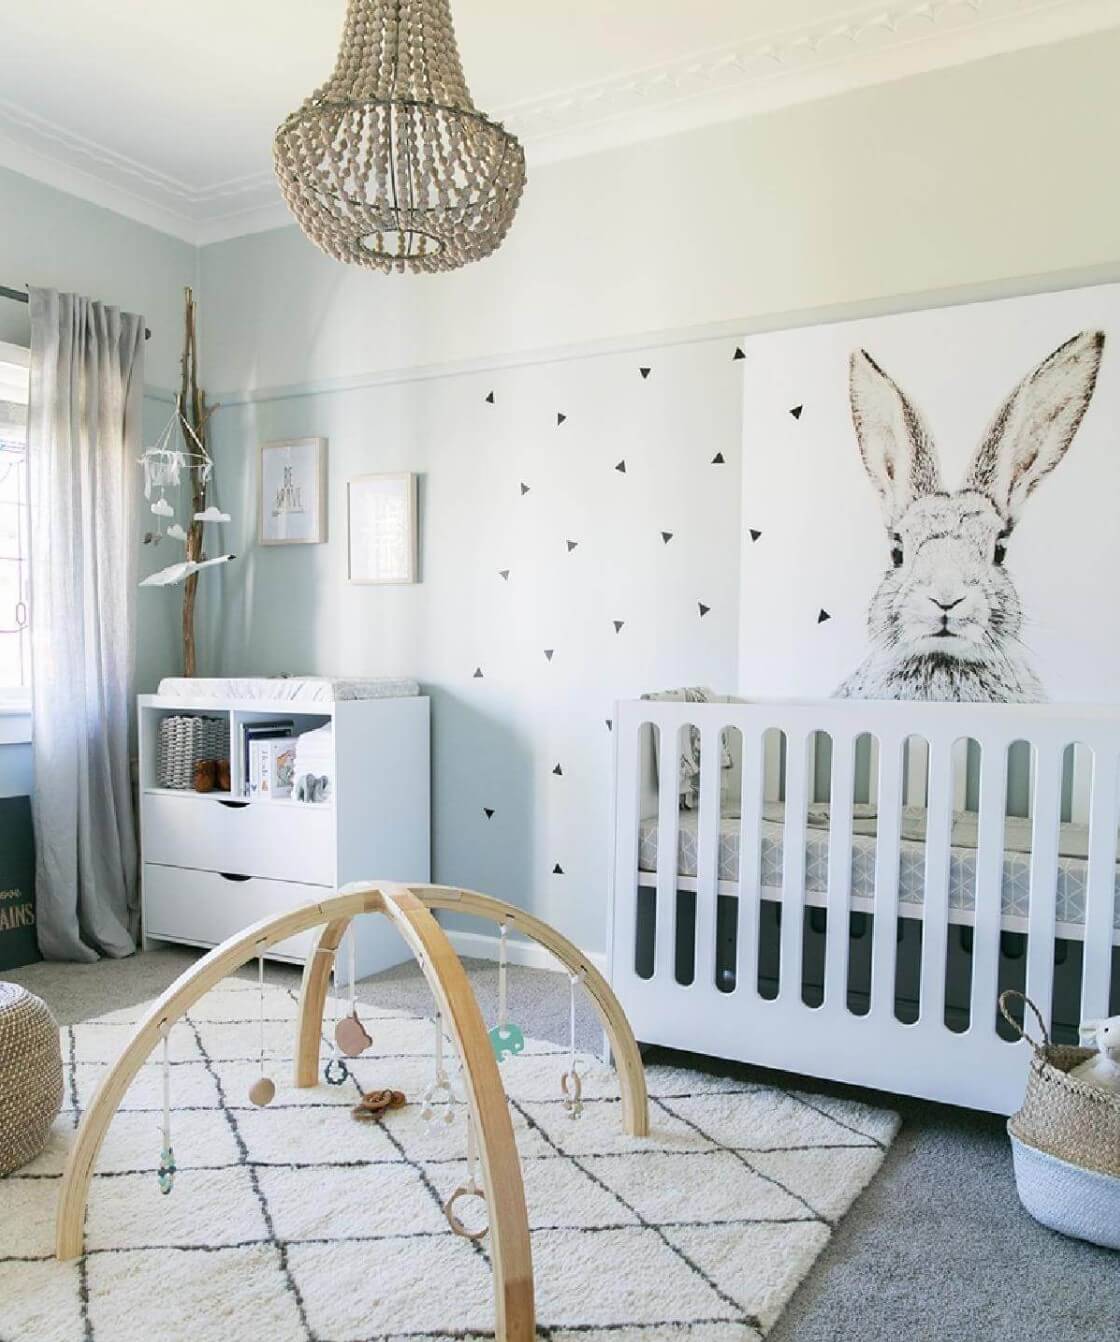 2 nursery decor ideas